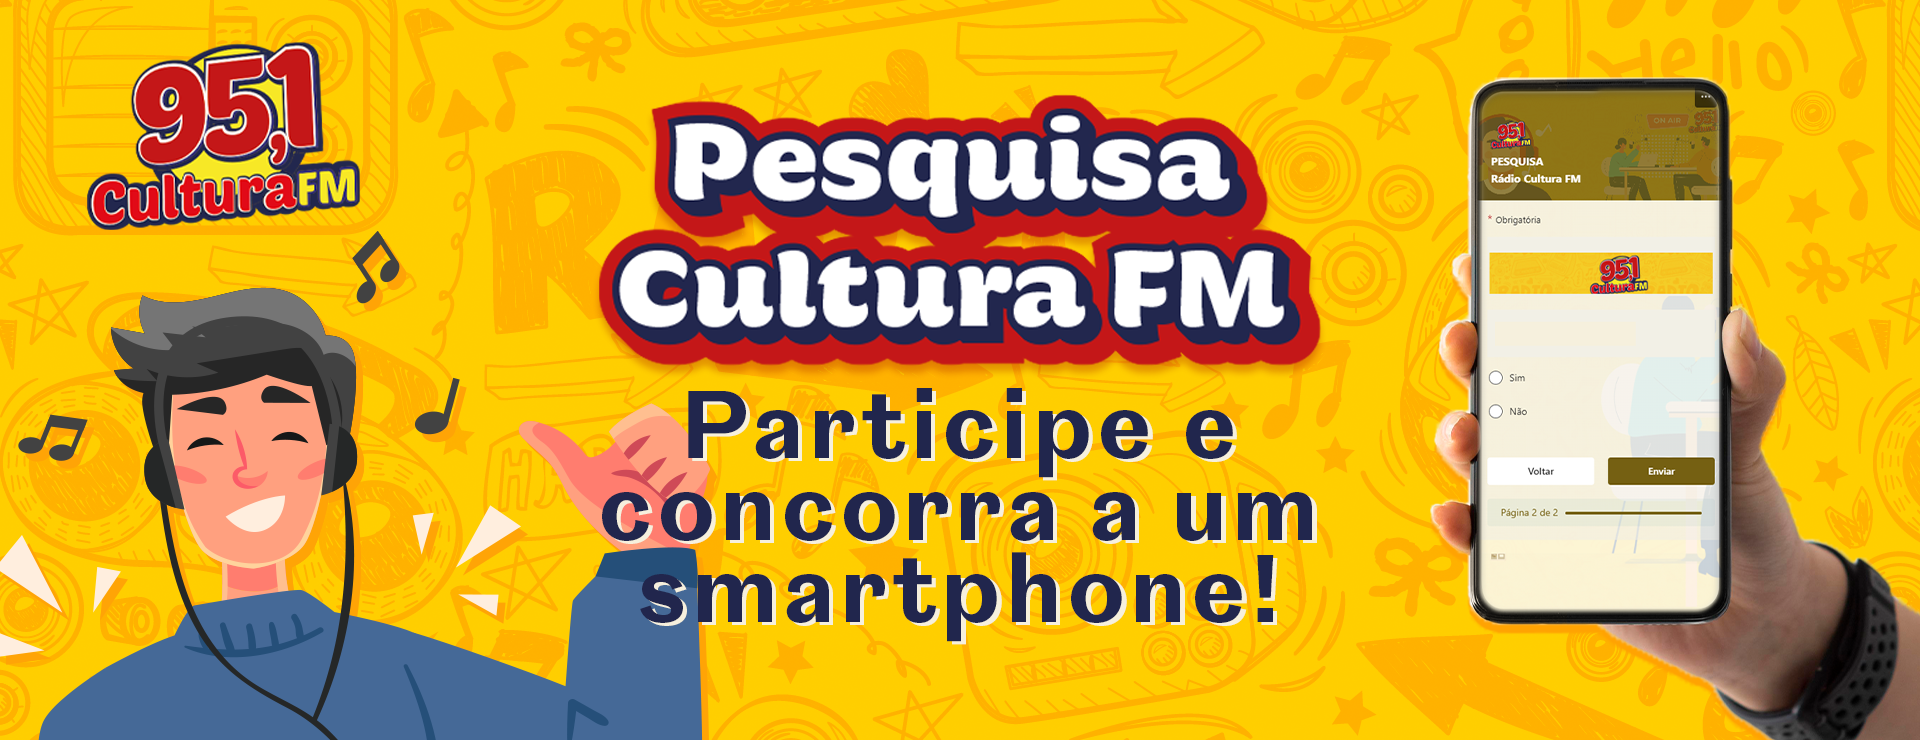 PESQUISA CULTURA FM